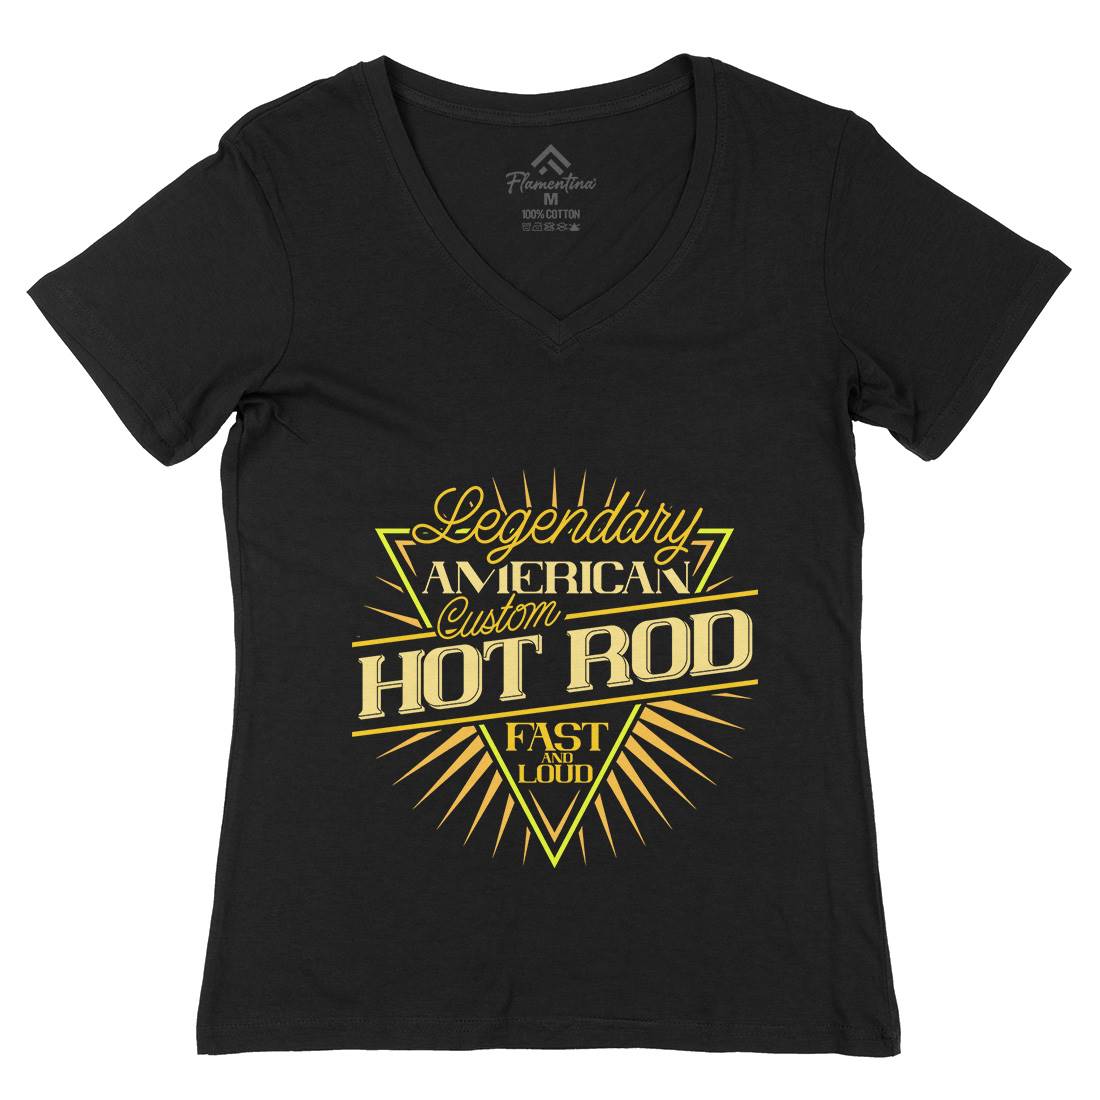 Hot Rod Womens Organic V-Neck T-Shirt Cars B305